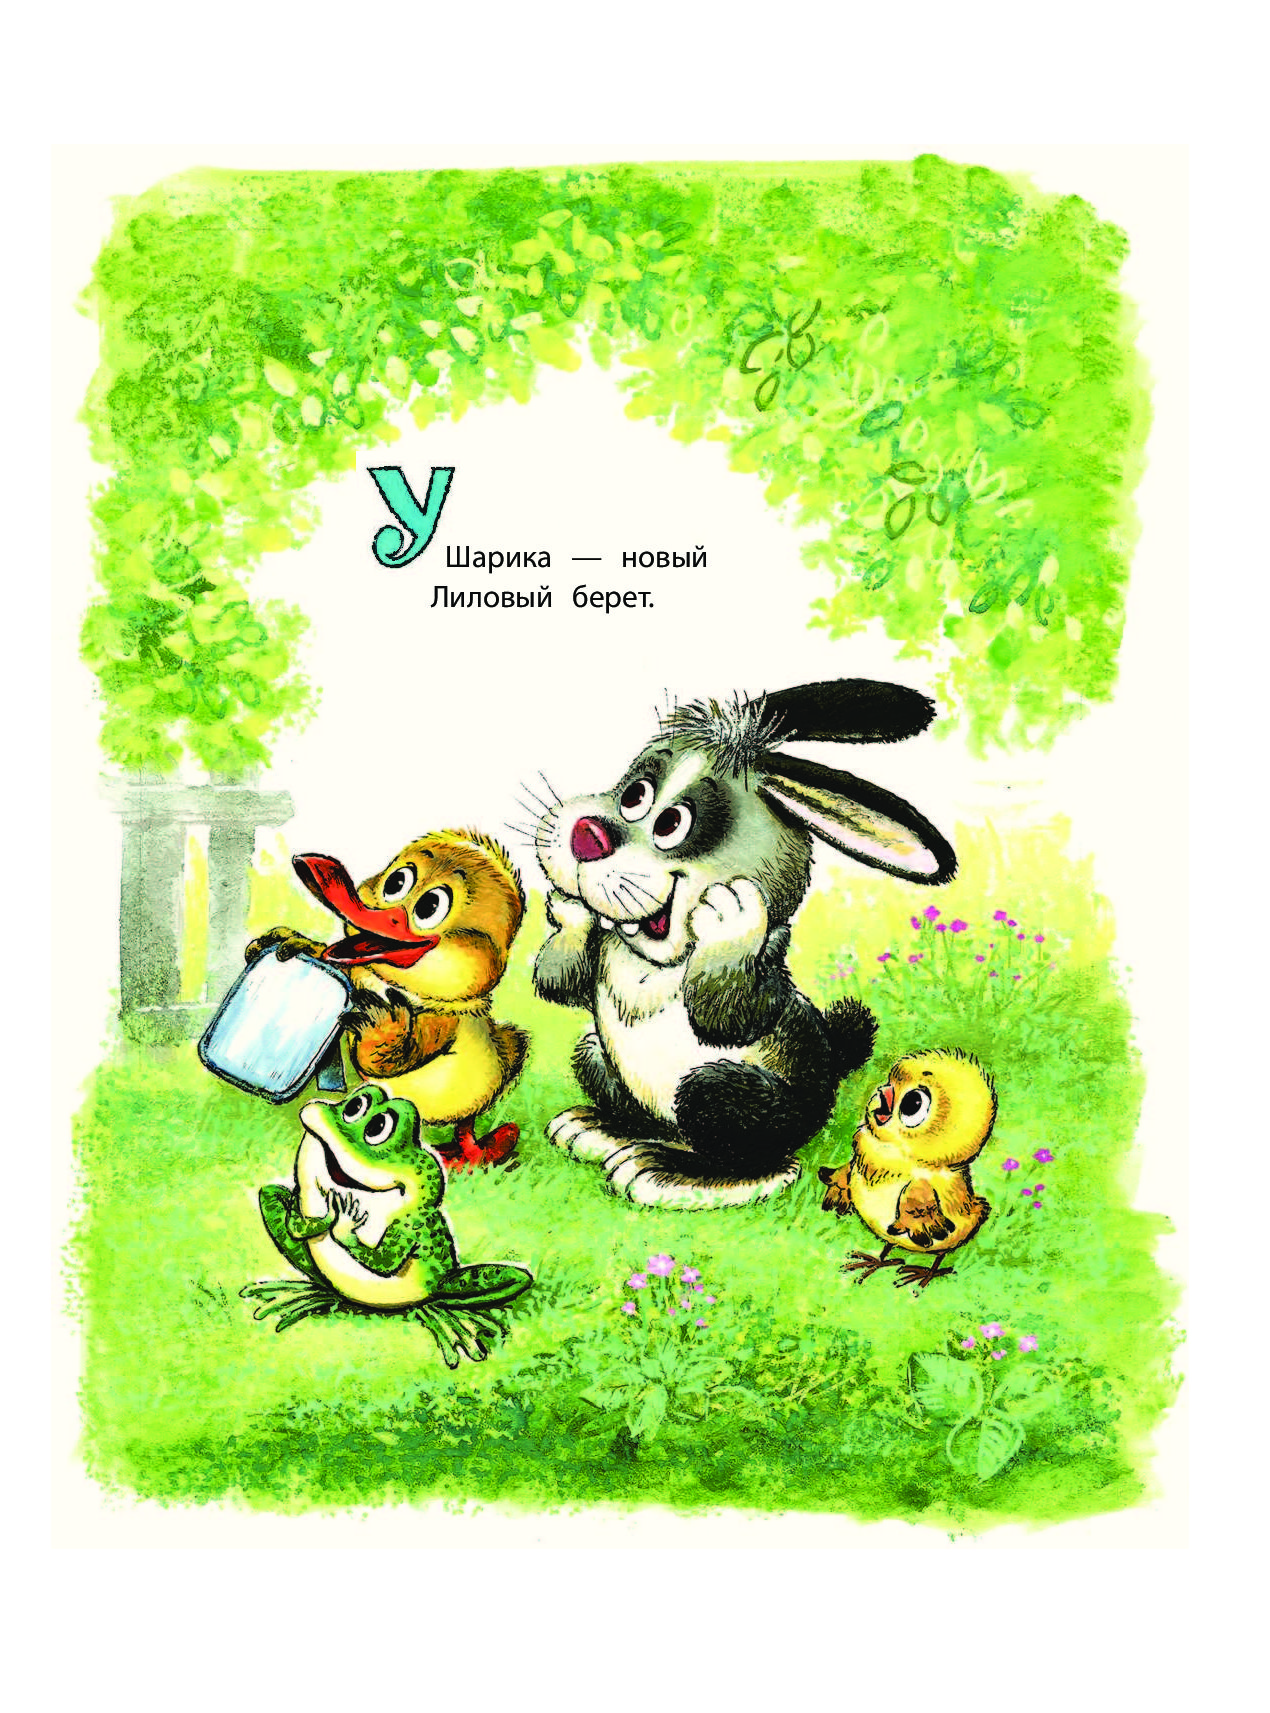 Иллюстрации Савченко к детским книгам